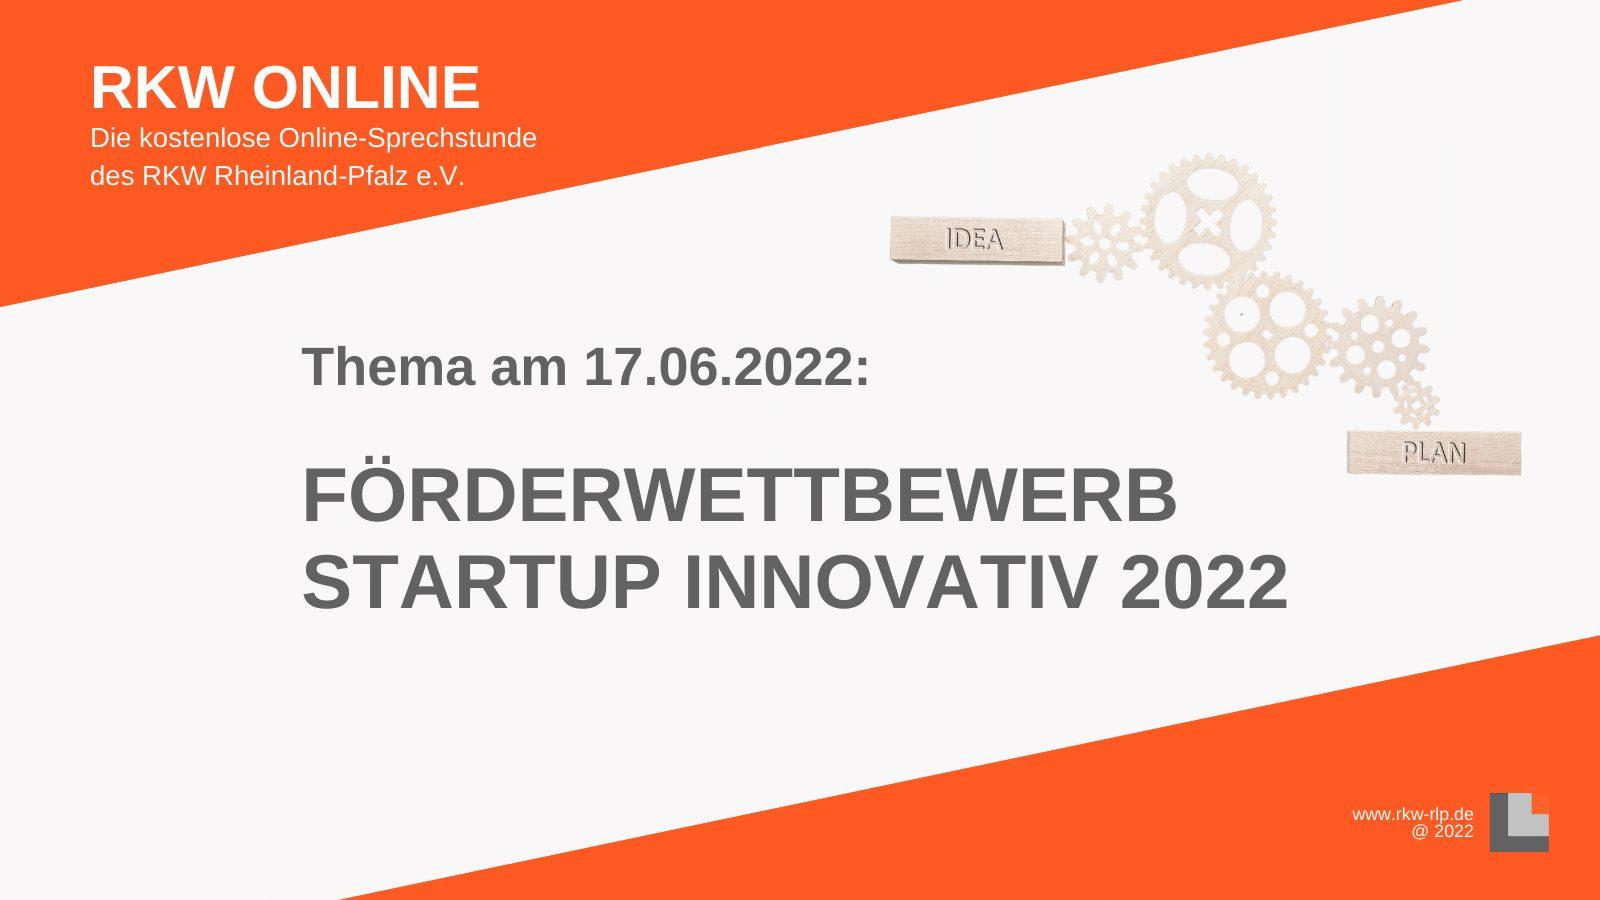 RKW Online – Förderwettbewerb Startup innovativ 2022